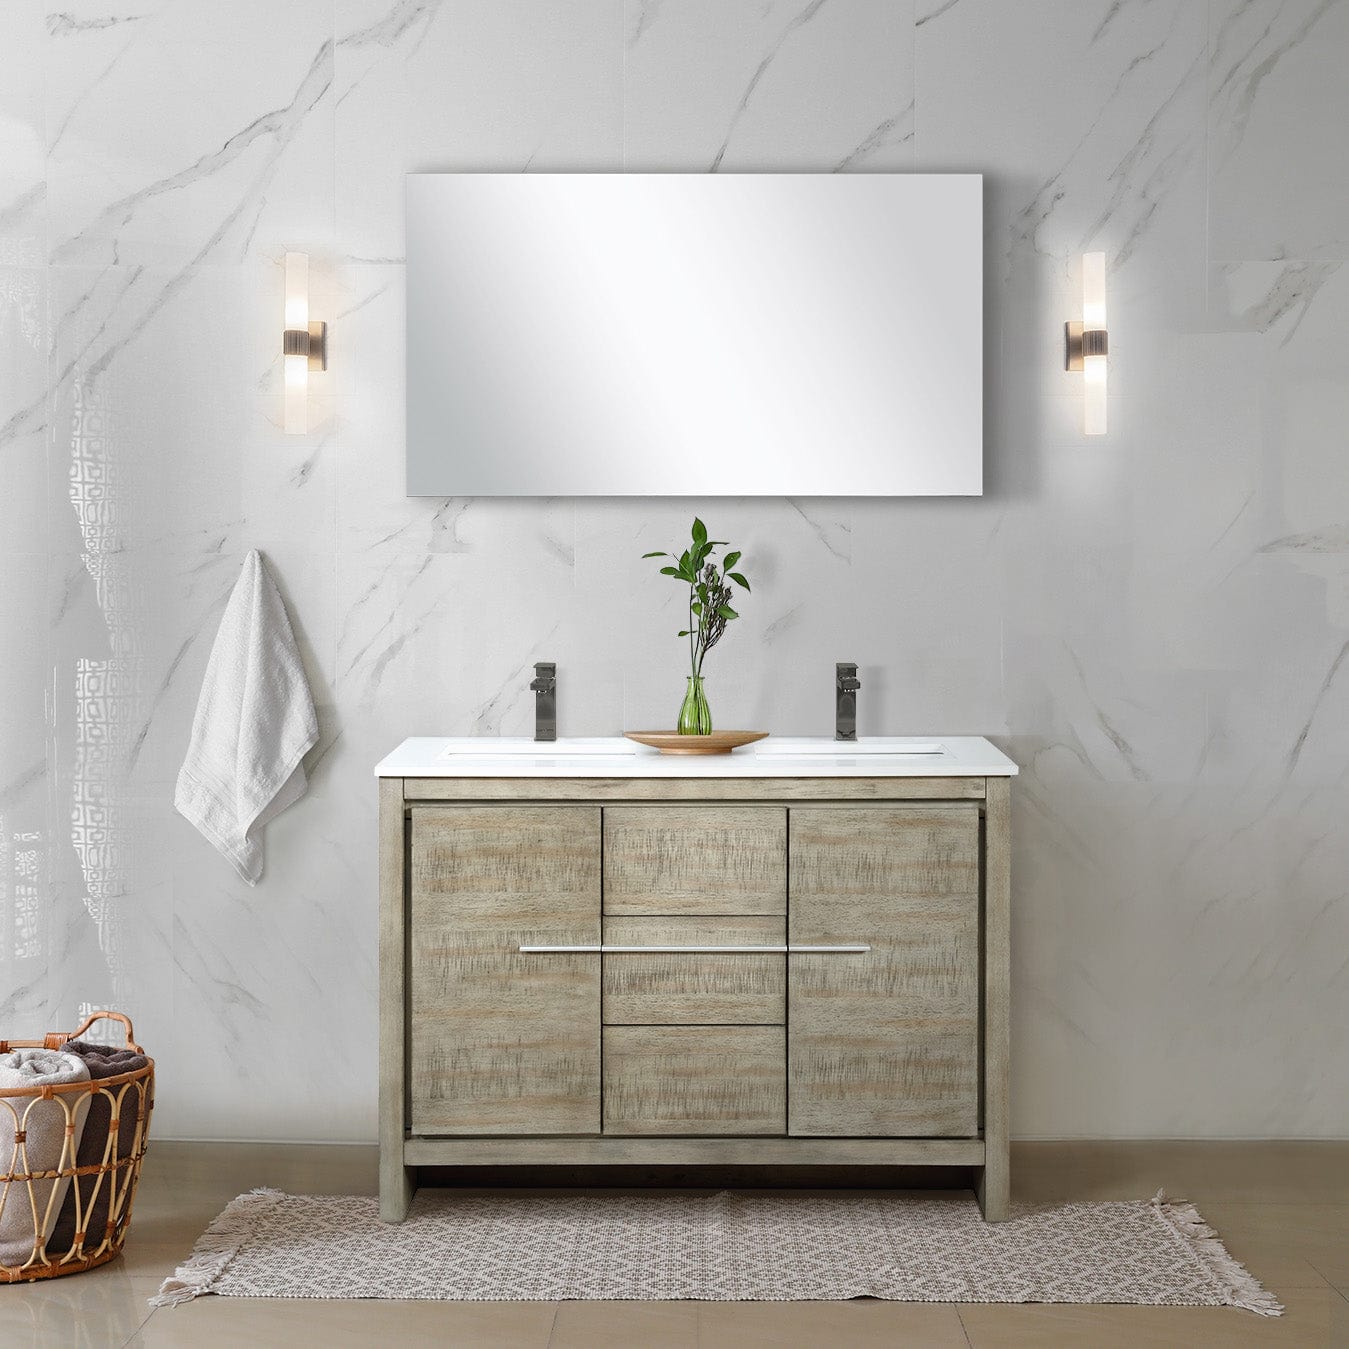 Lexora Bathroom Vanity Cultured Marble / Gun Metal Faucet / No Mirror Lafarre 48" Rustic Acacia Double Bathroom Vanity